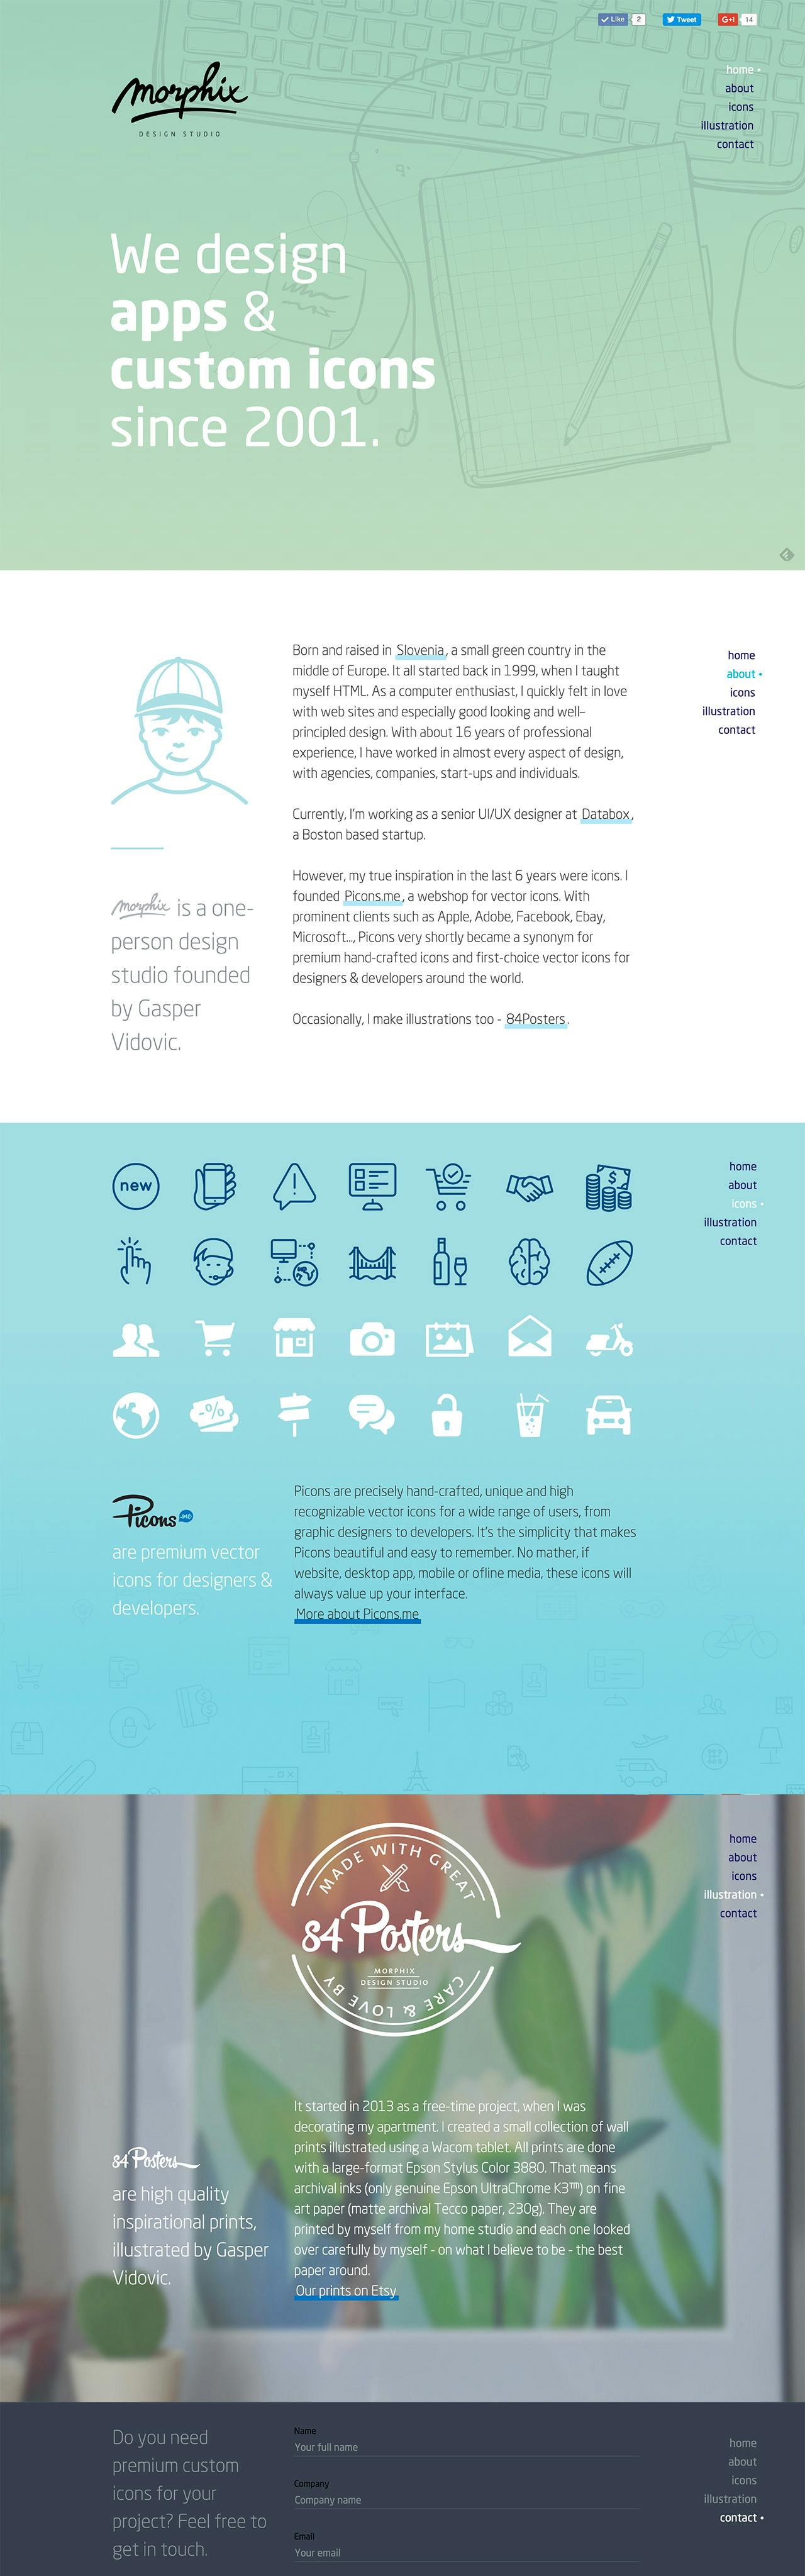 Morphix Design Studio Website Screenshot